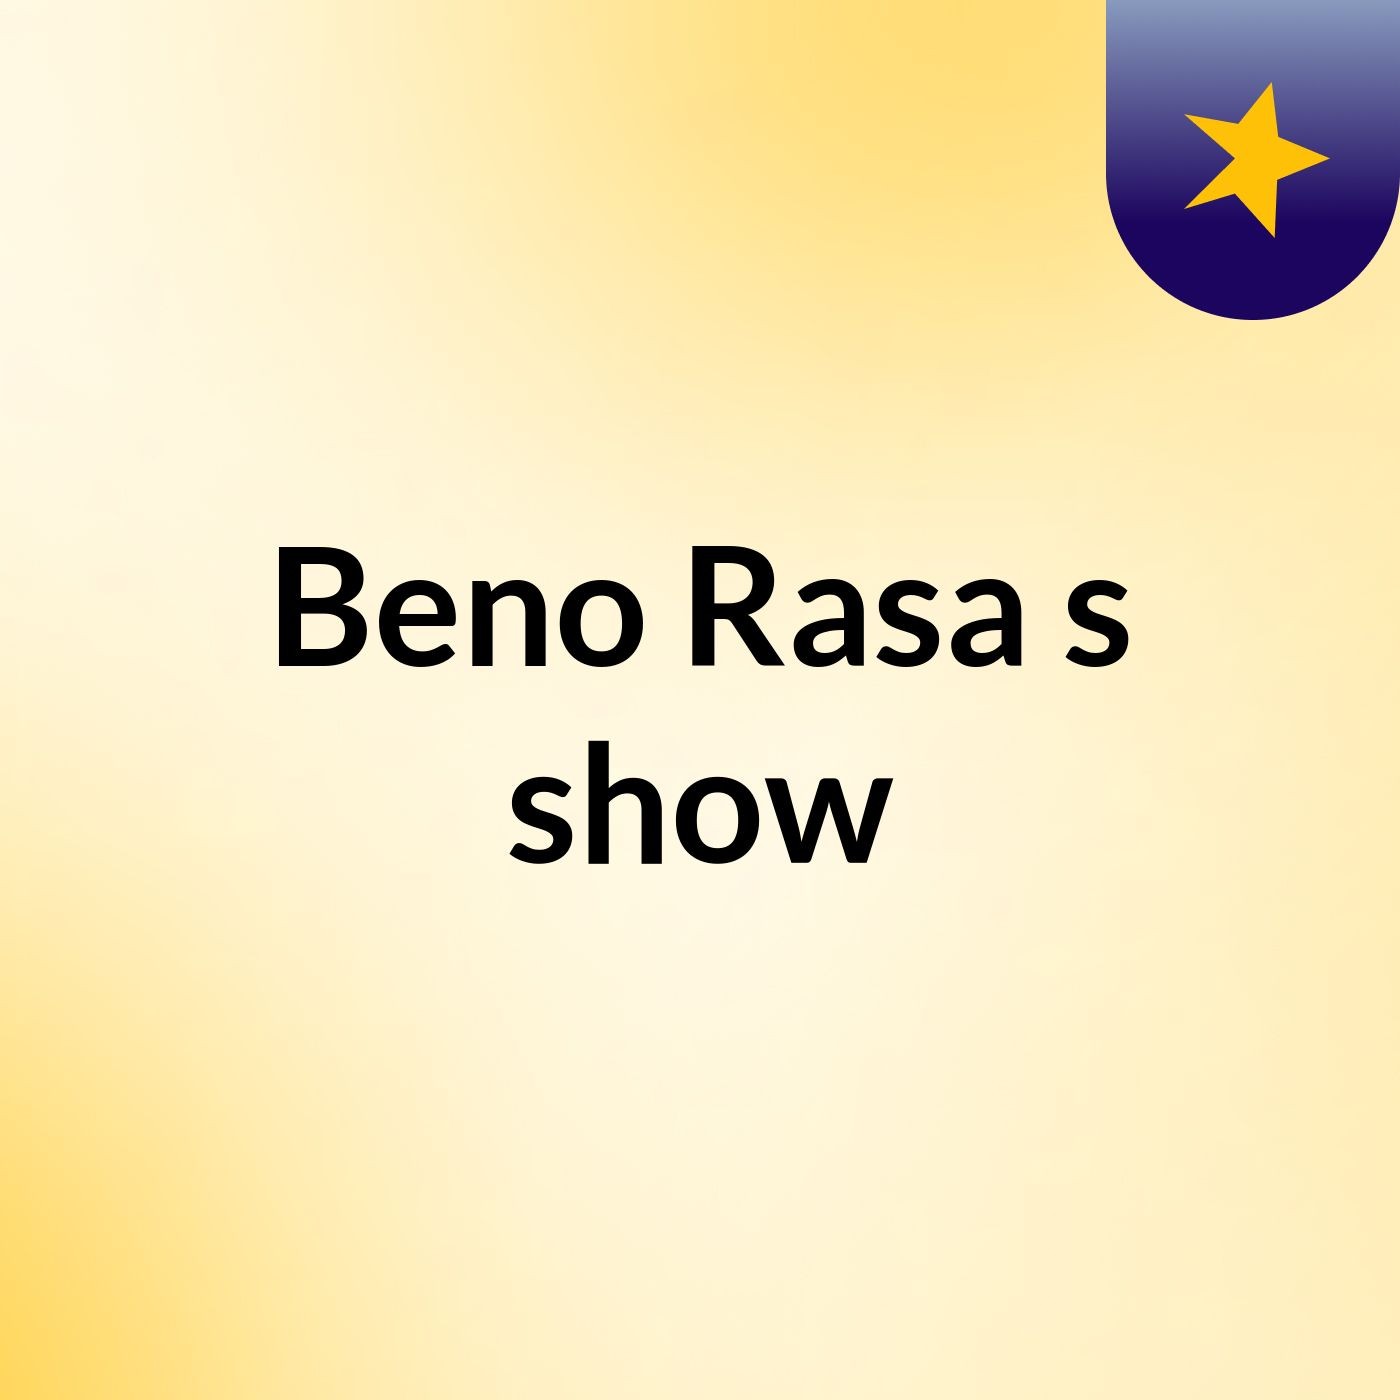 Beno Rasa's show